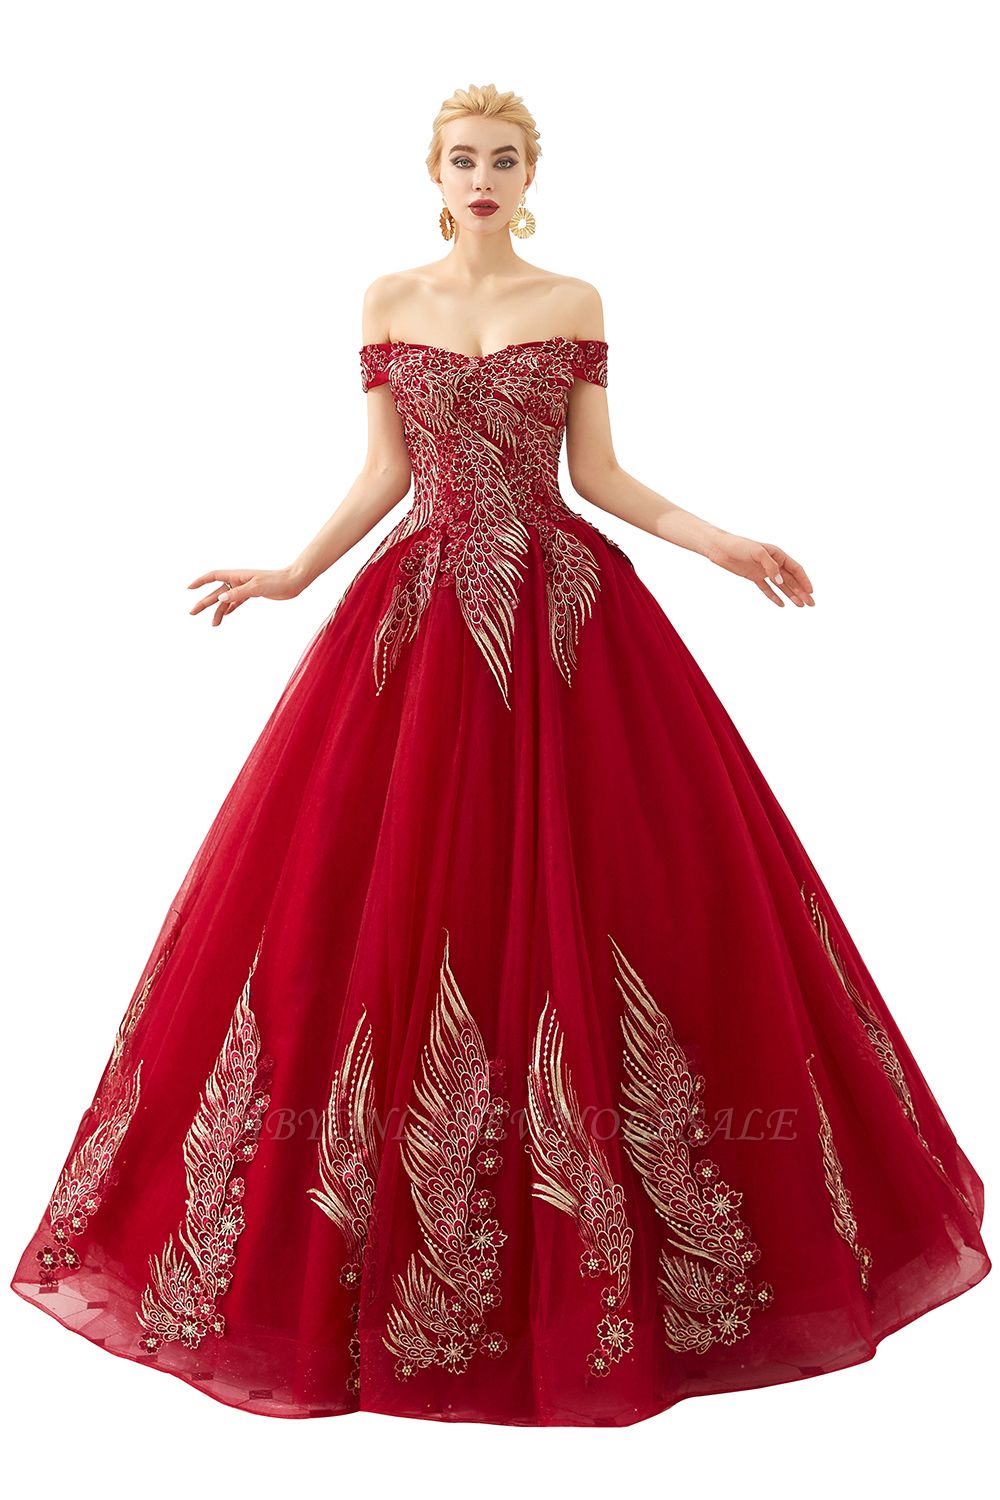 Henry | Elegante vestido de fiesta princesa rojo / menta fuera del hombro con bordado de alas